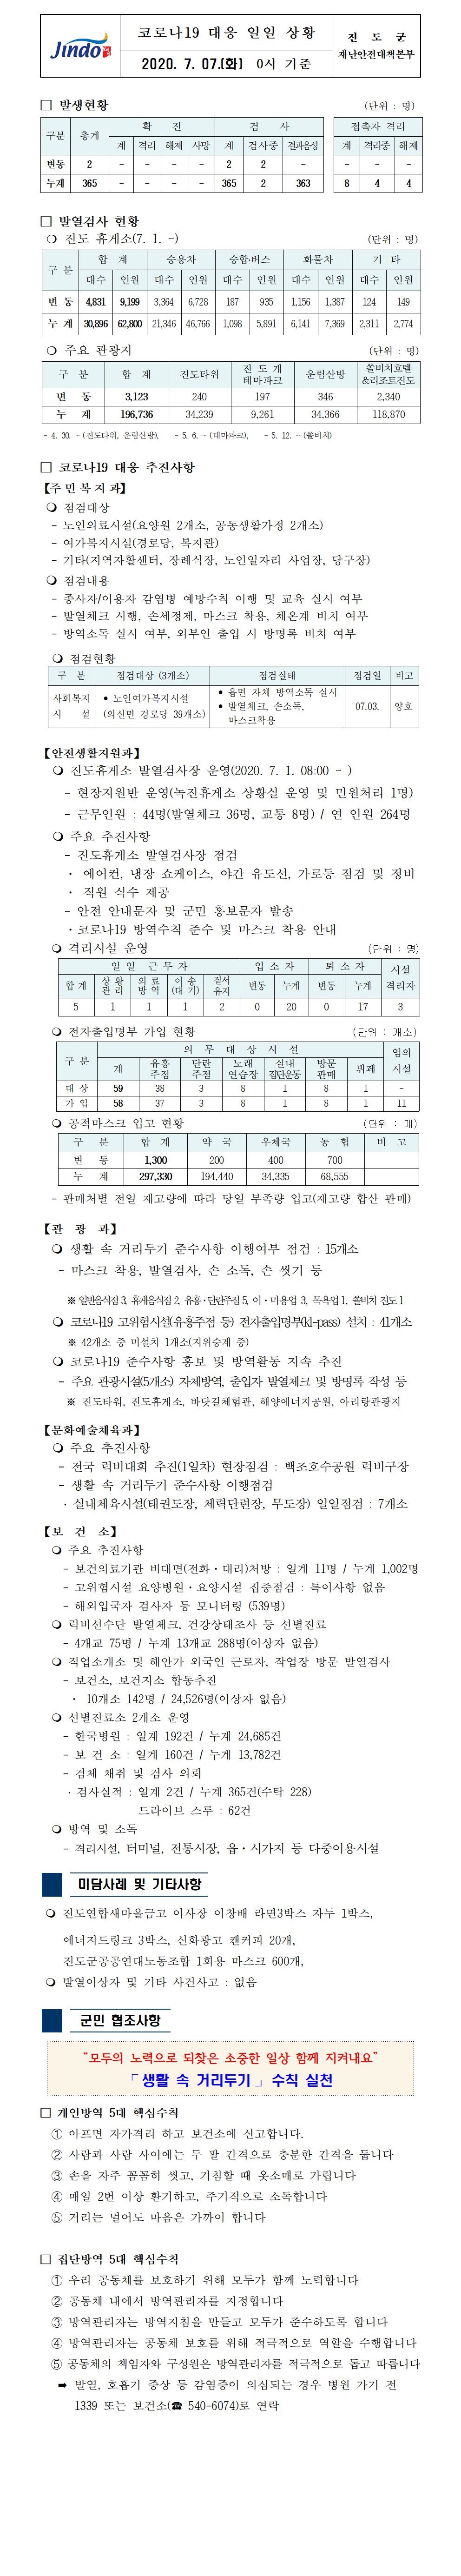 코로나19대응 일일 상황 보고(7월 7일 0시 기준) 첨부#1